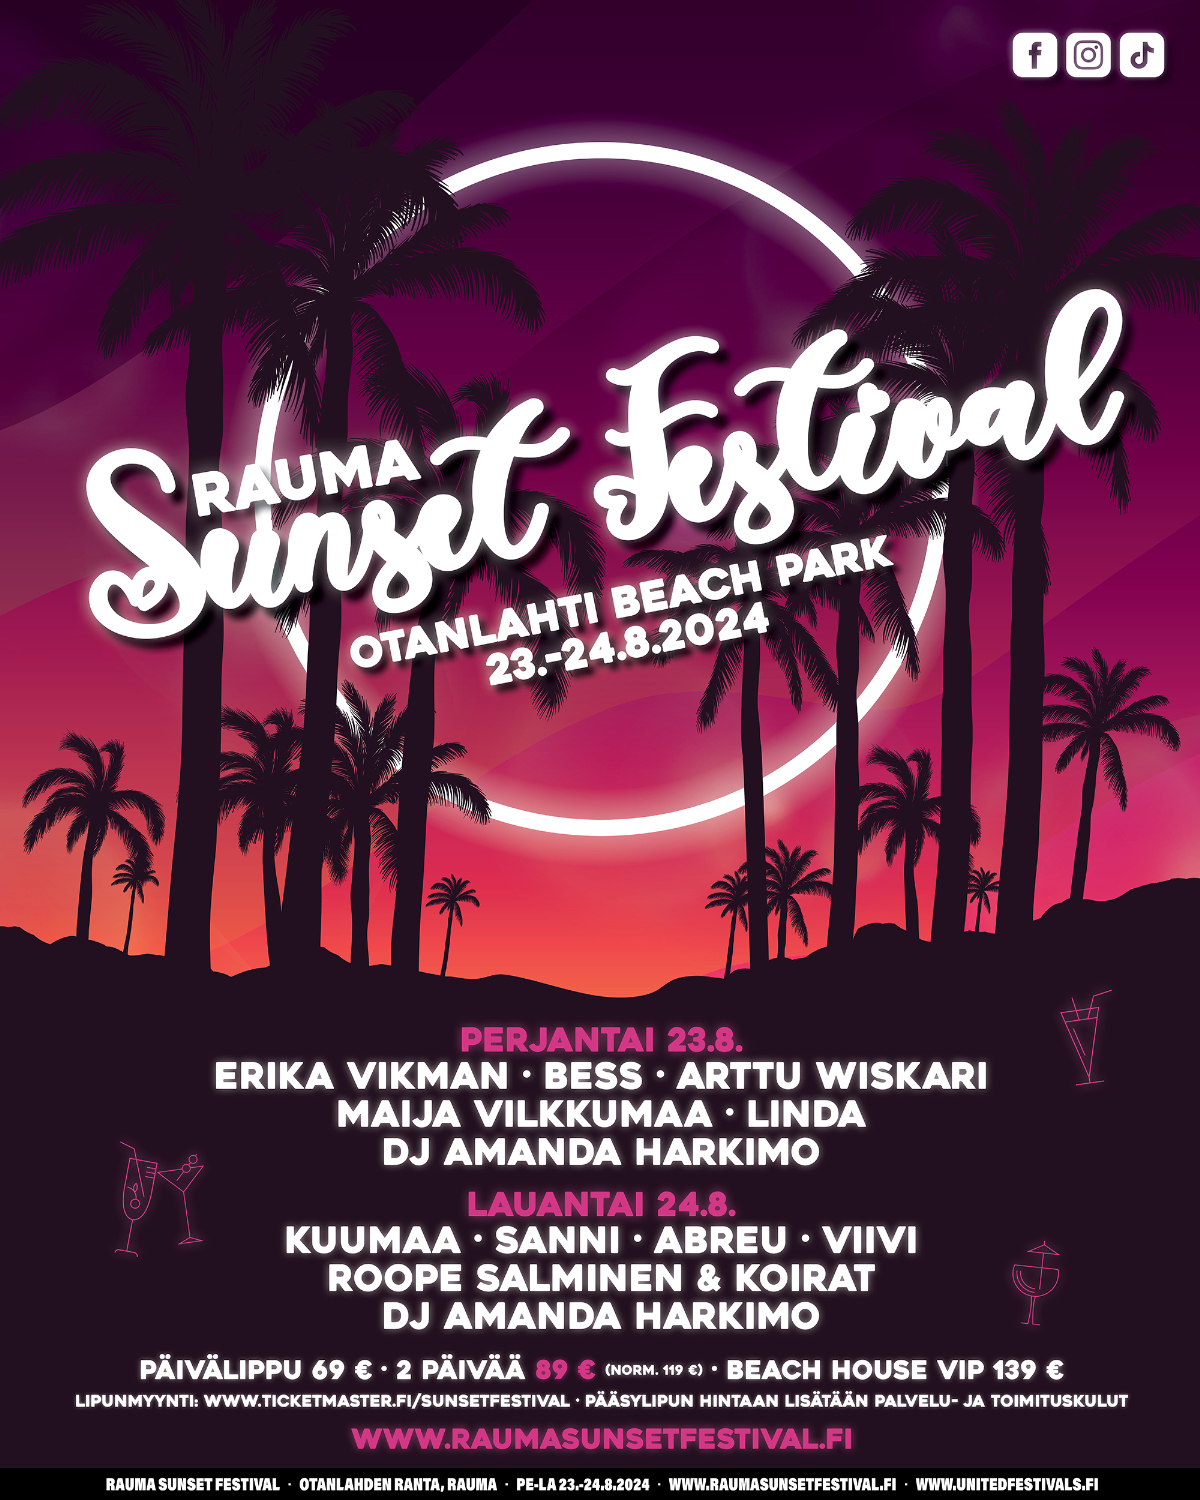 Uusi kesäfestivaali Rauma Sunset Festival järjestetään Otanlahden rannalla elokuussa 2024!